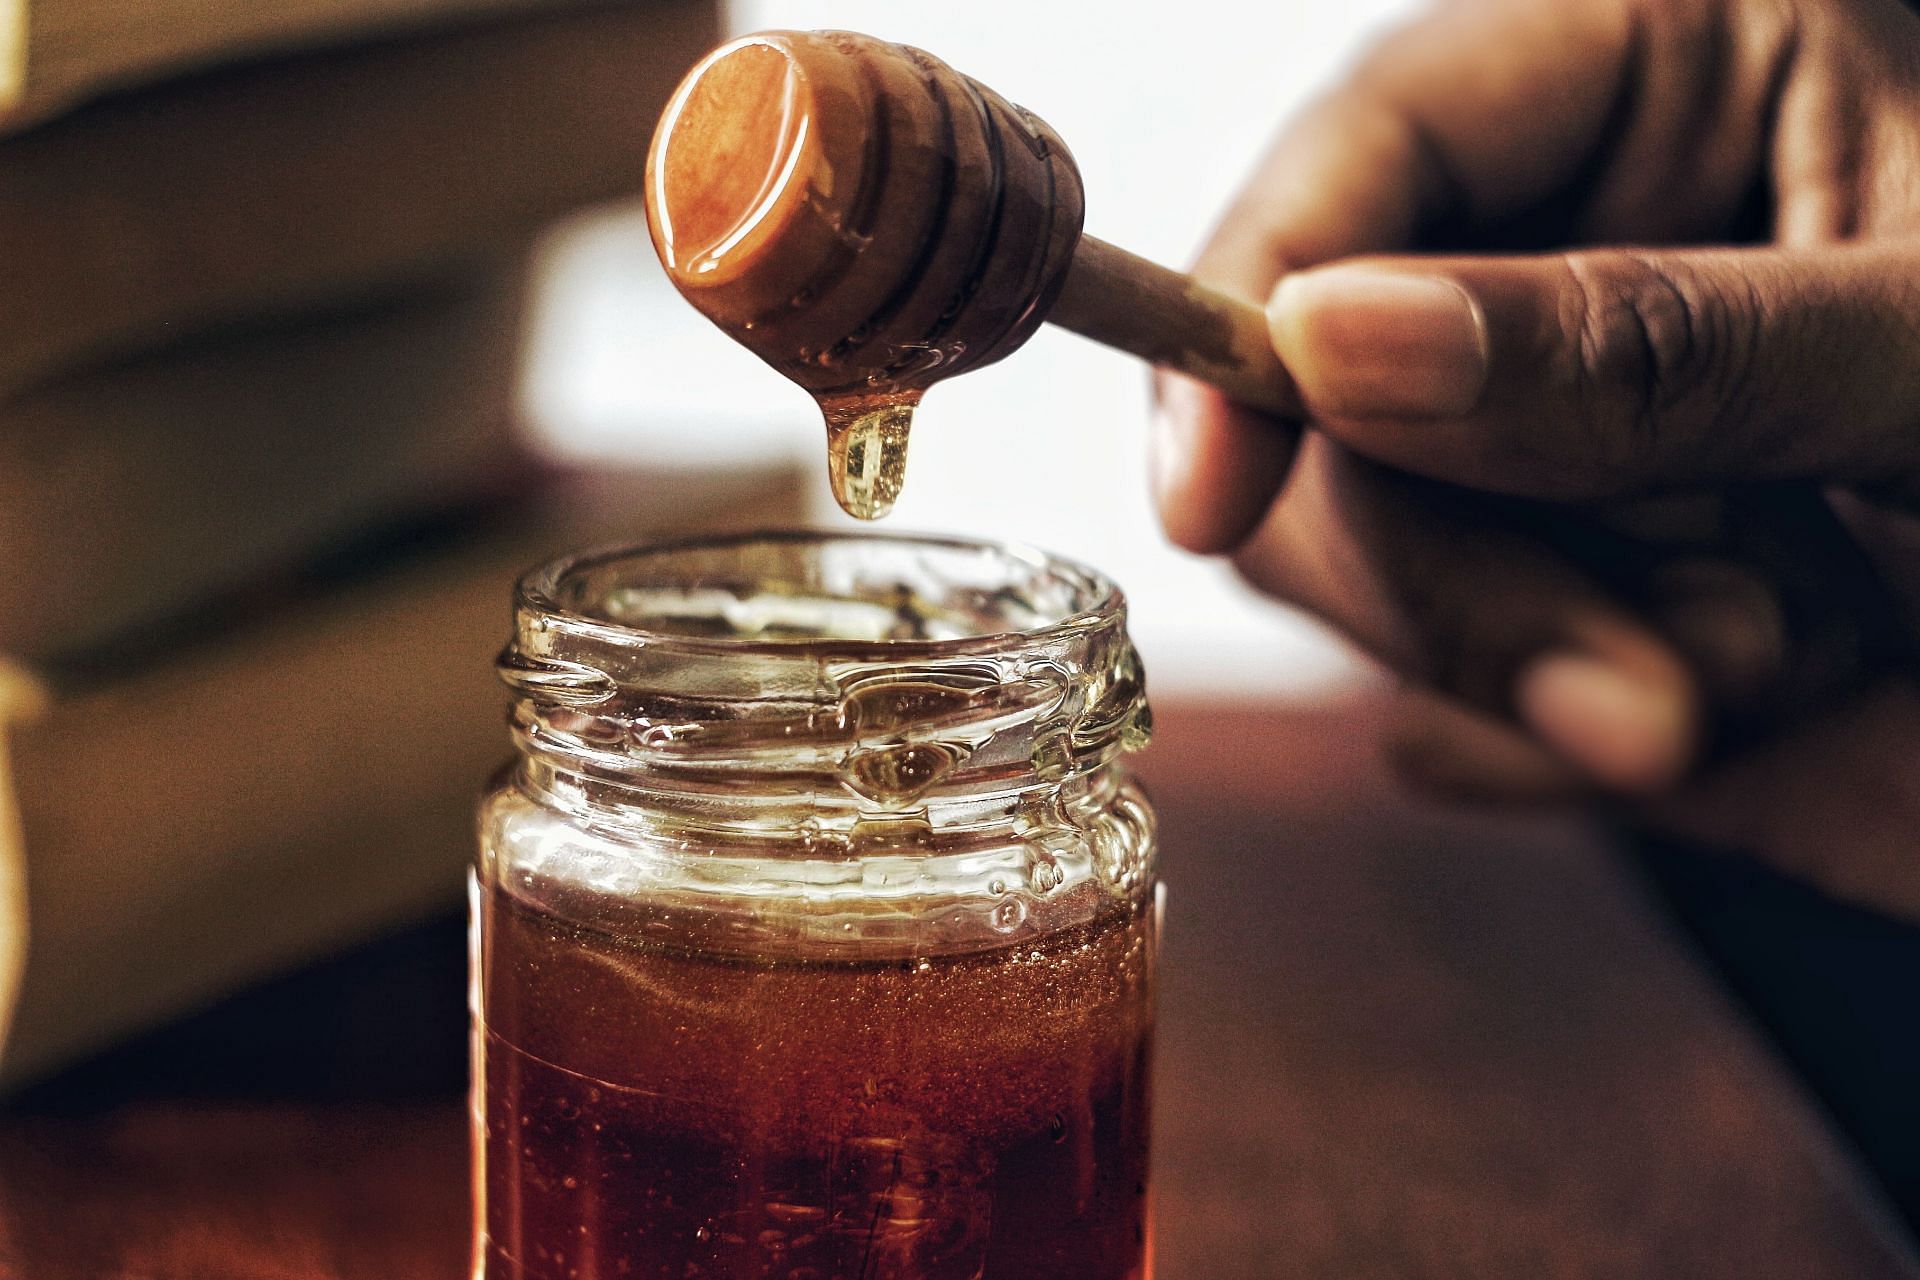 Honey in coffee (Image via Unsplash/Arwin)